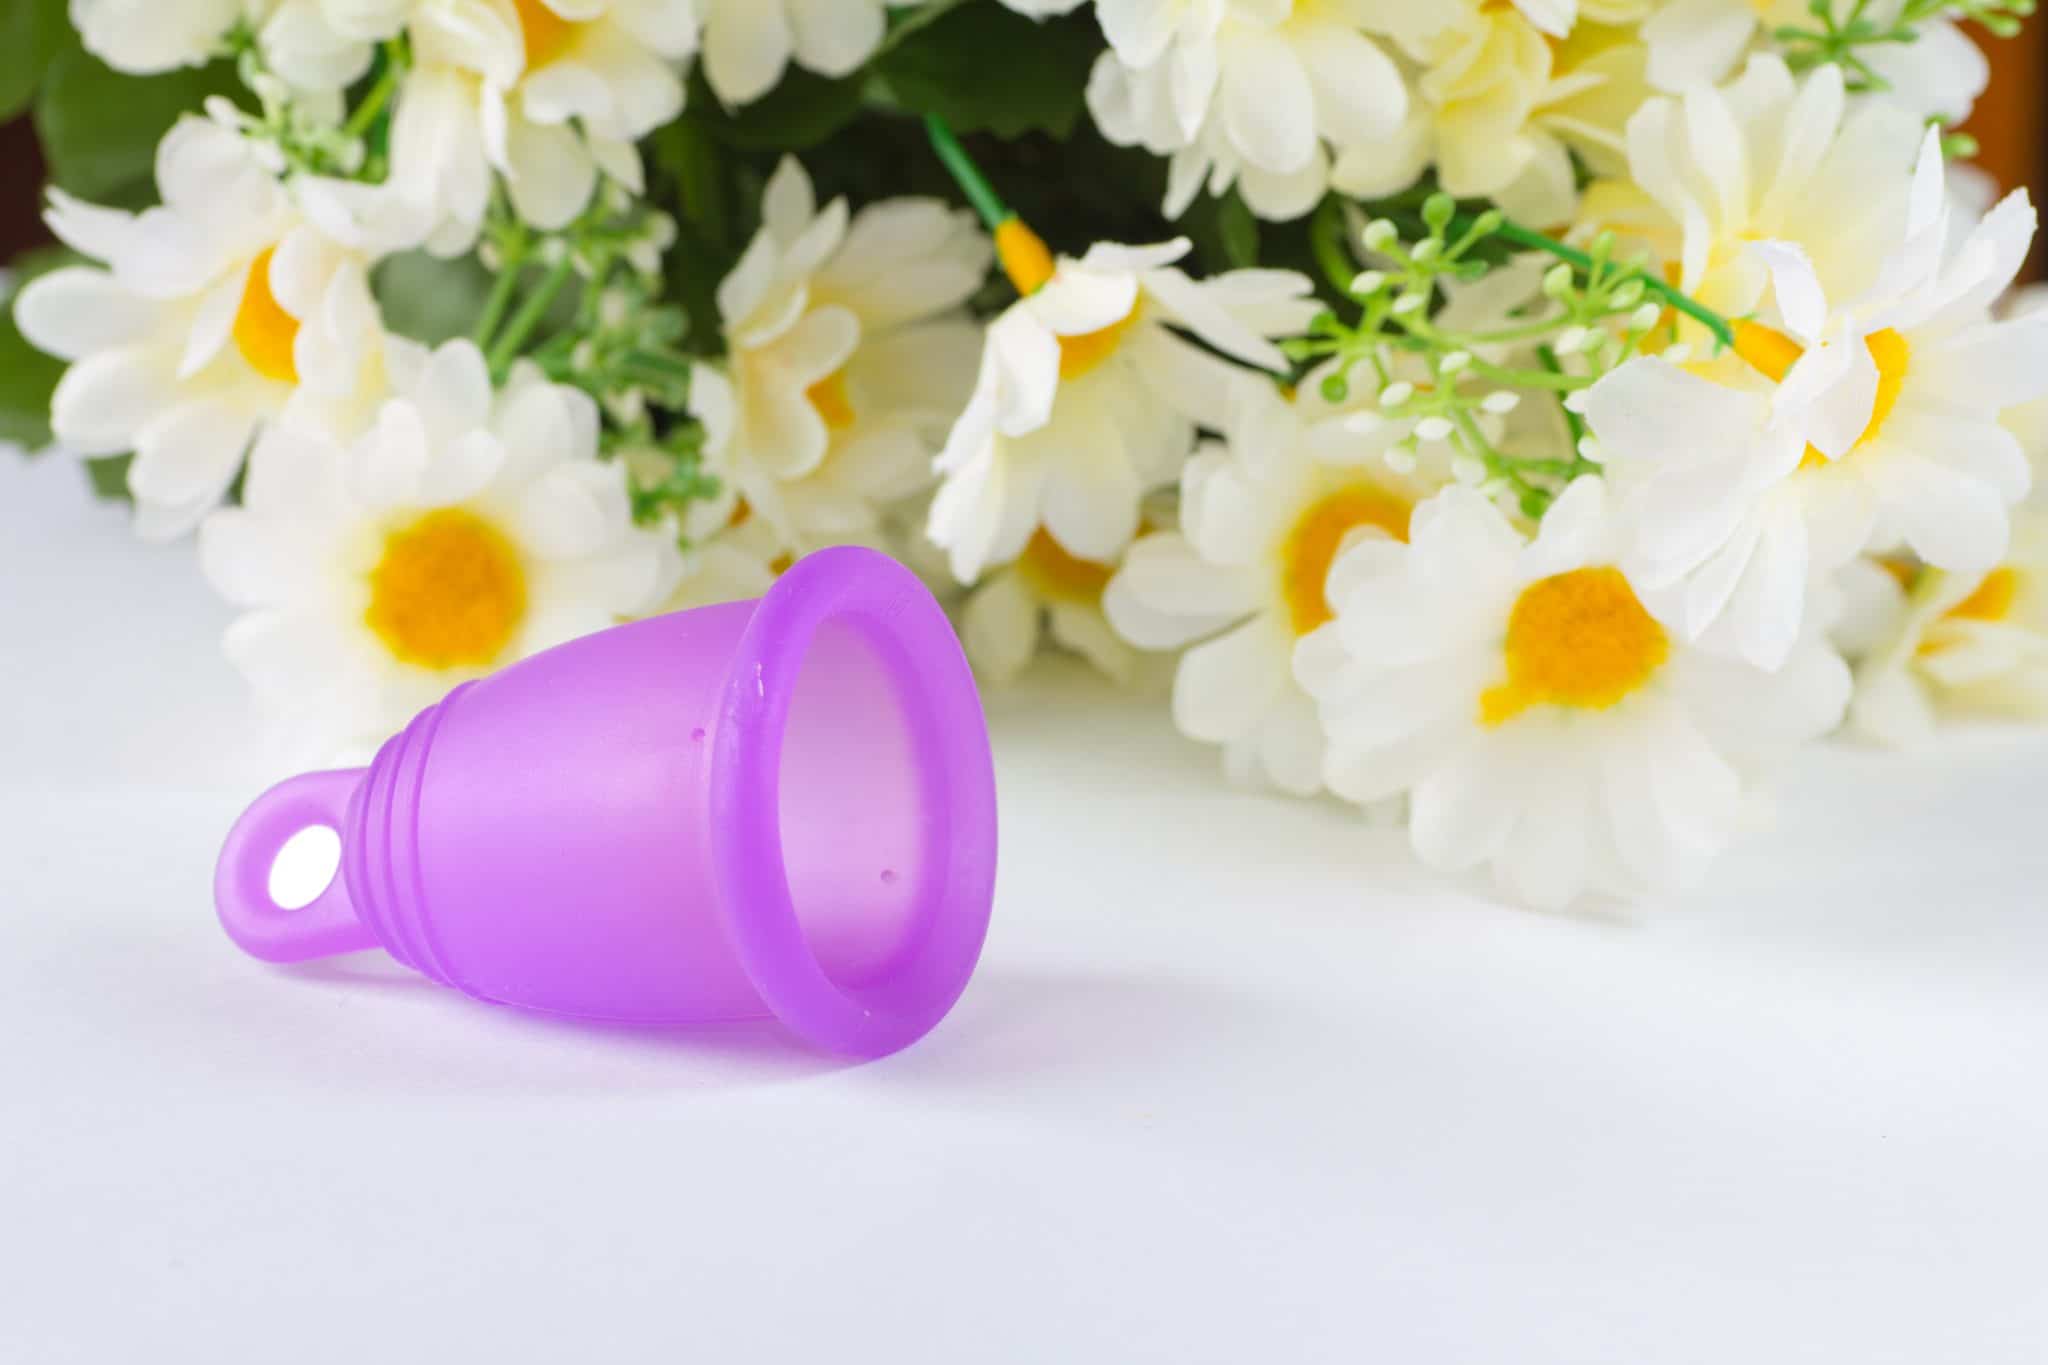 Une coupe menstruelle violette, une alternative pour les personnes allergiques aux serviettes hygiéniques, devant un bouquet de fleurs blanches et jaunes.